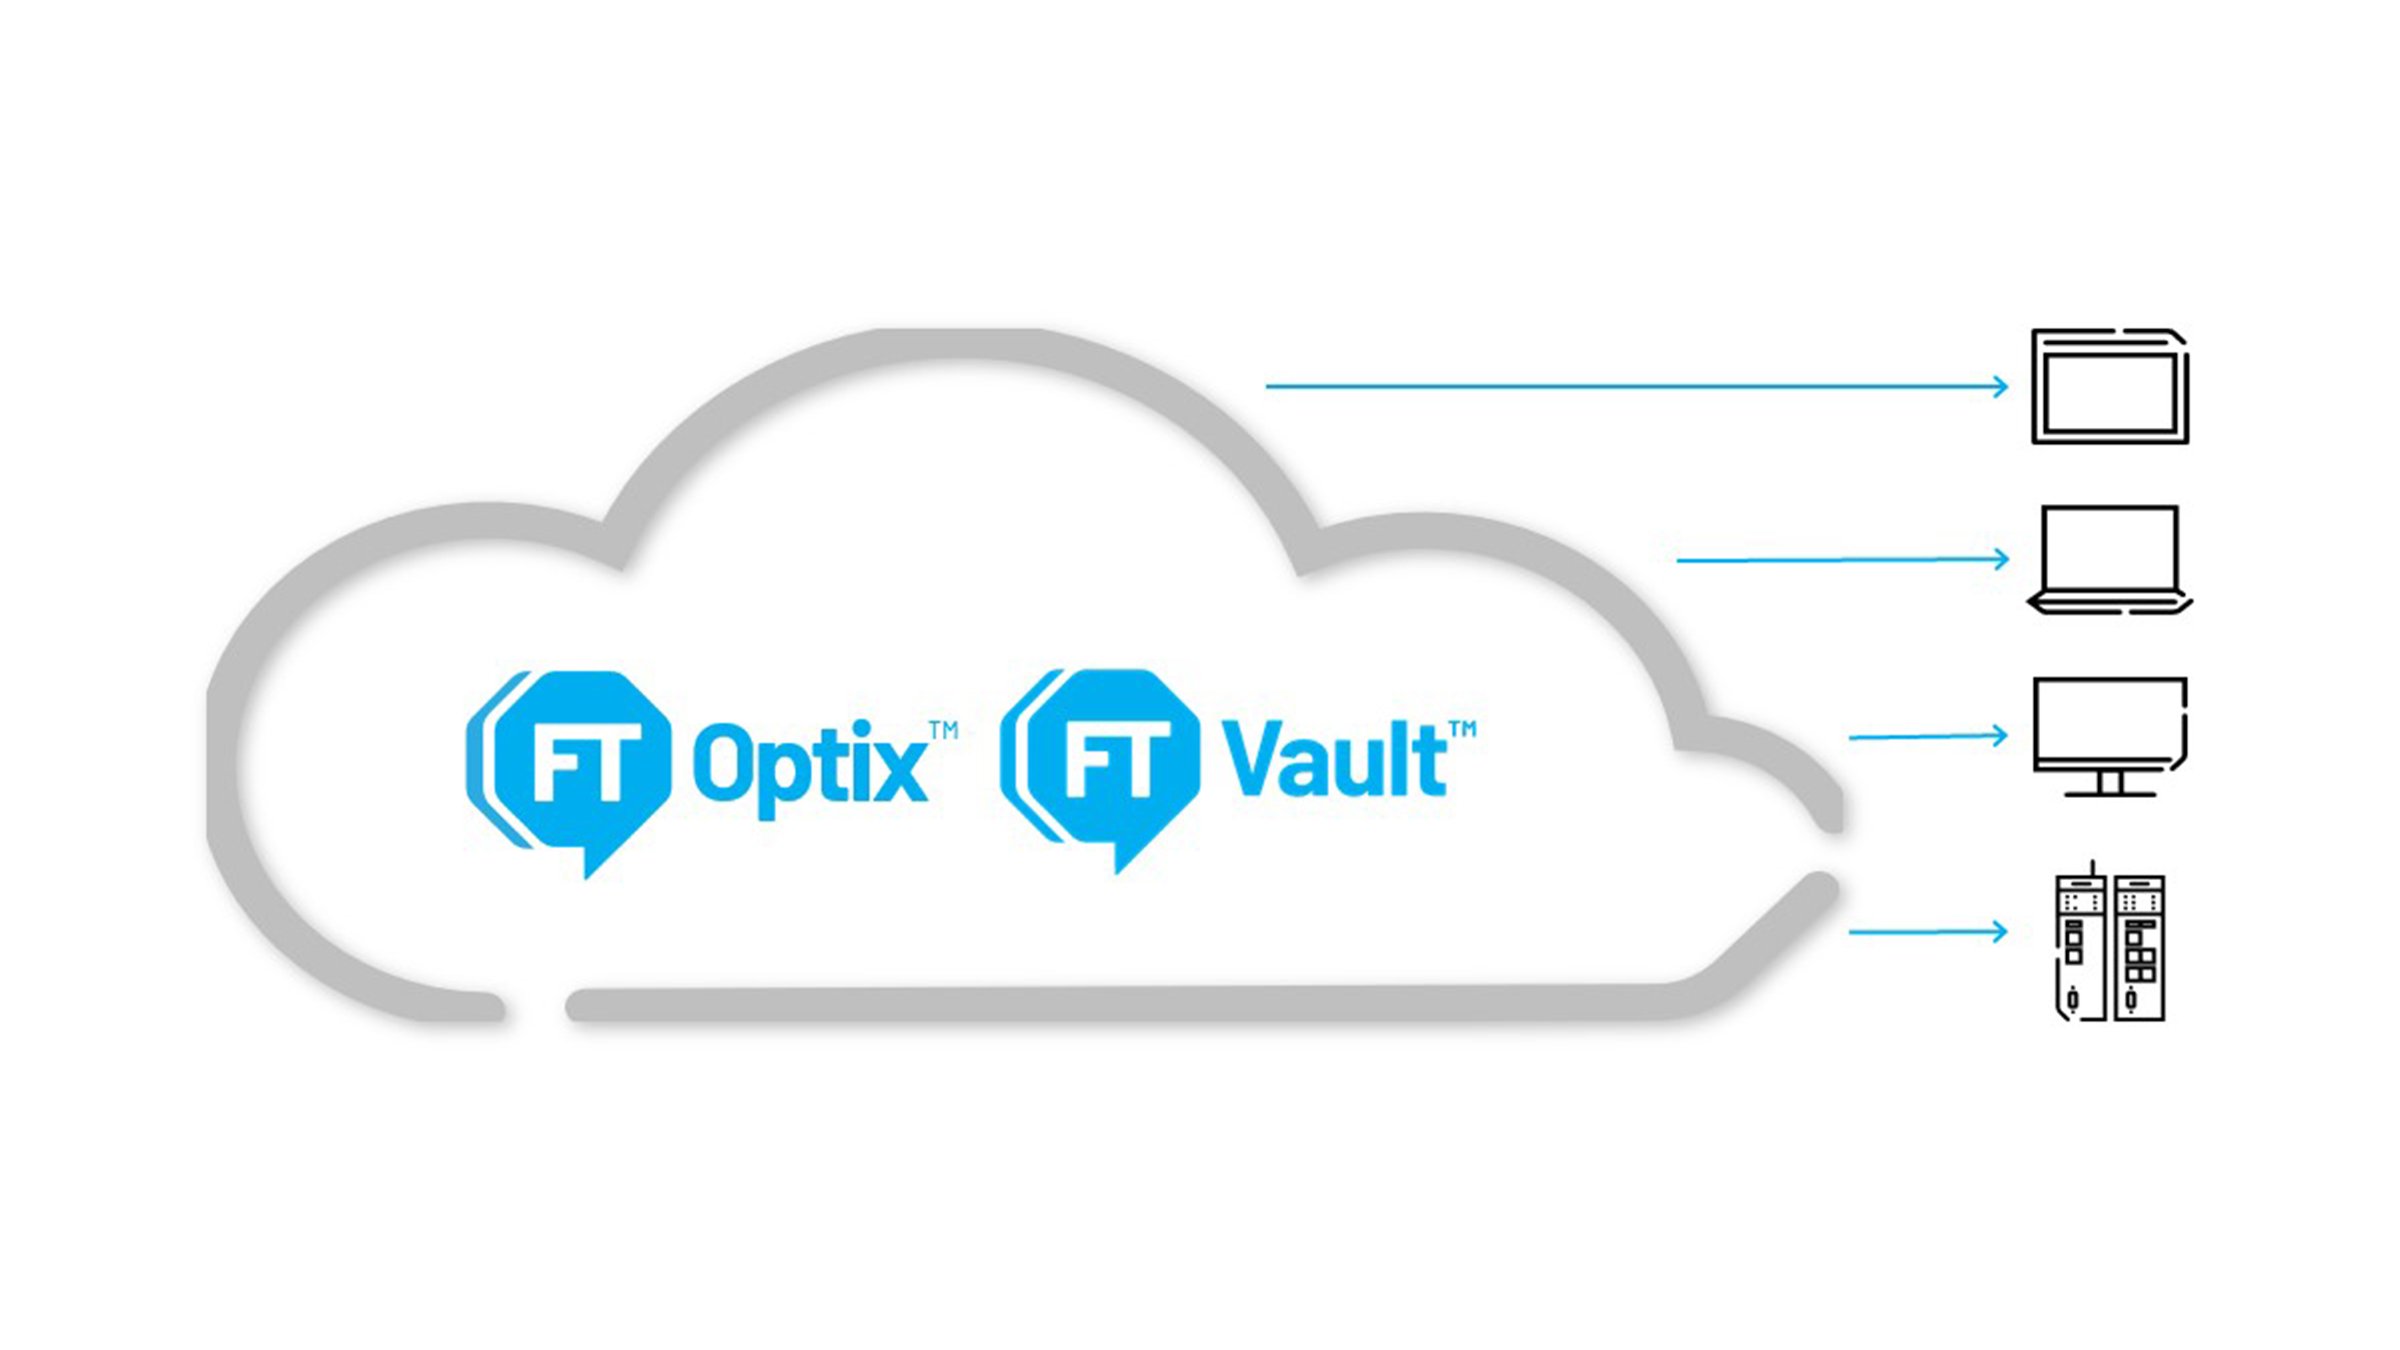 Migliorare la collaborazione, scalabilità e interoperabilità per ottenere la vostra visione HMI con FactoryTalk Optix e Vault